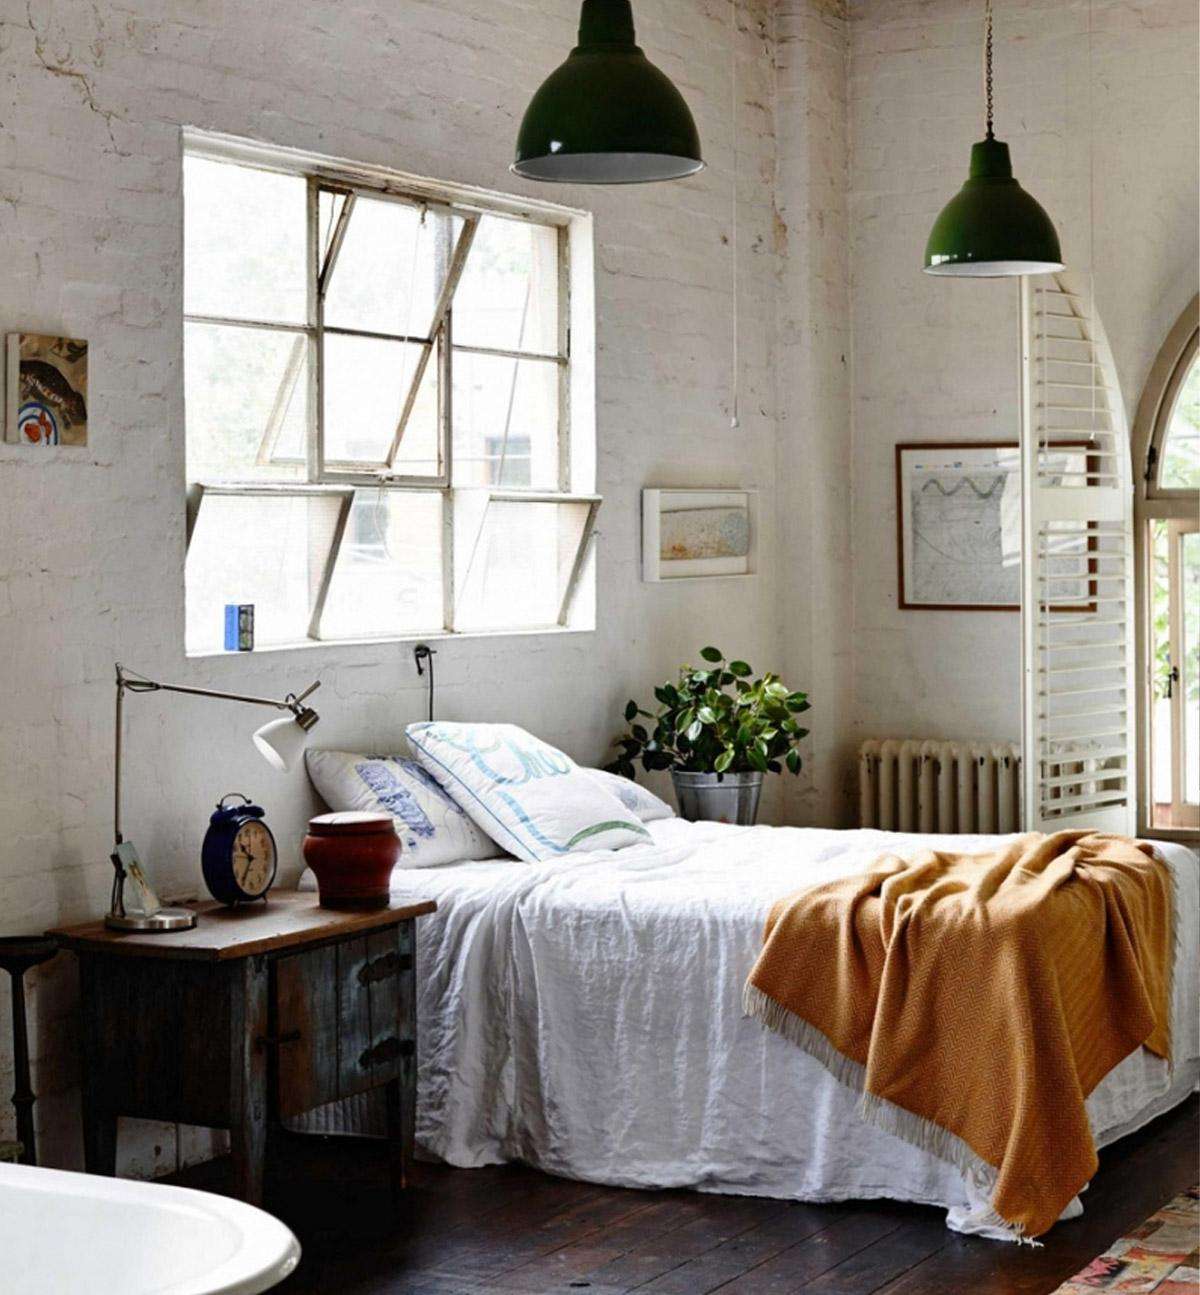 Phòng ngủ mang đậm phong cách nội thất Vintage trong từng chi tiết